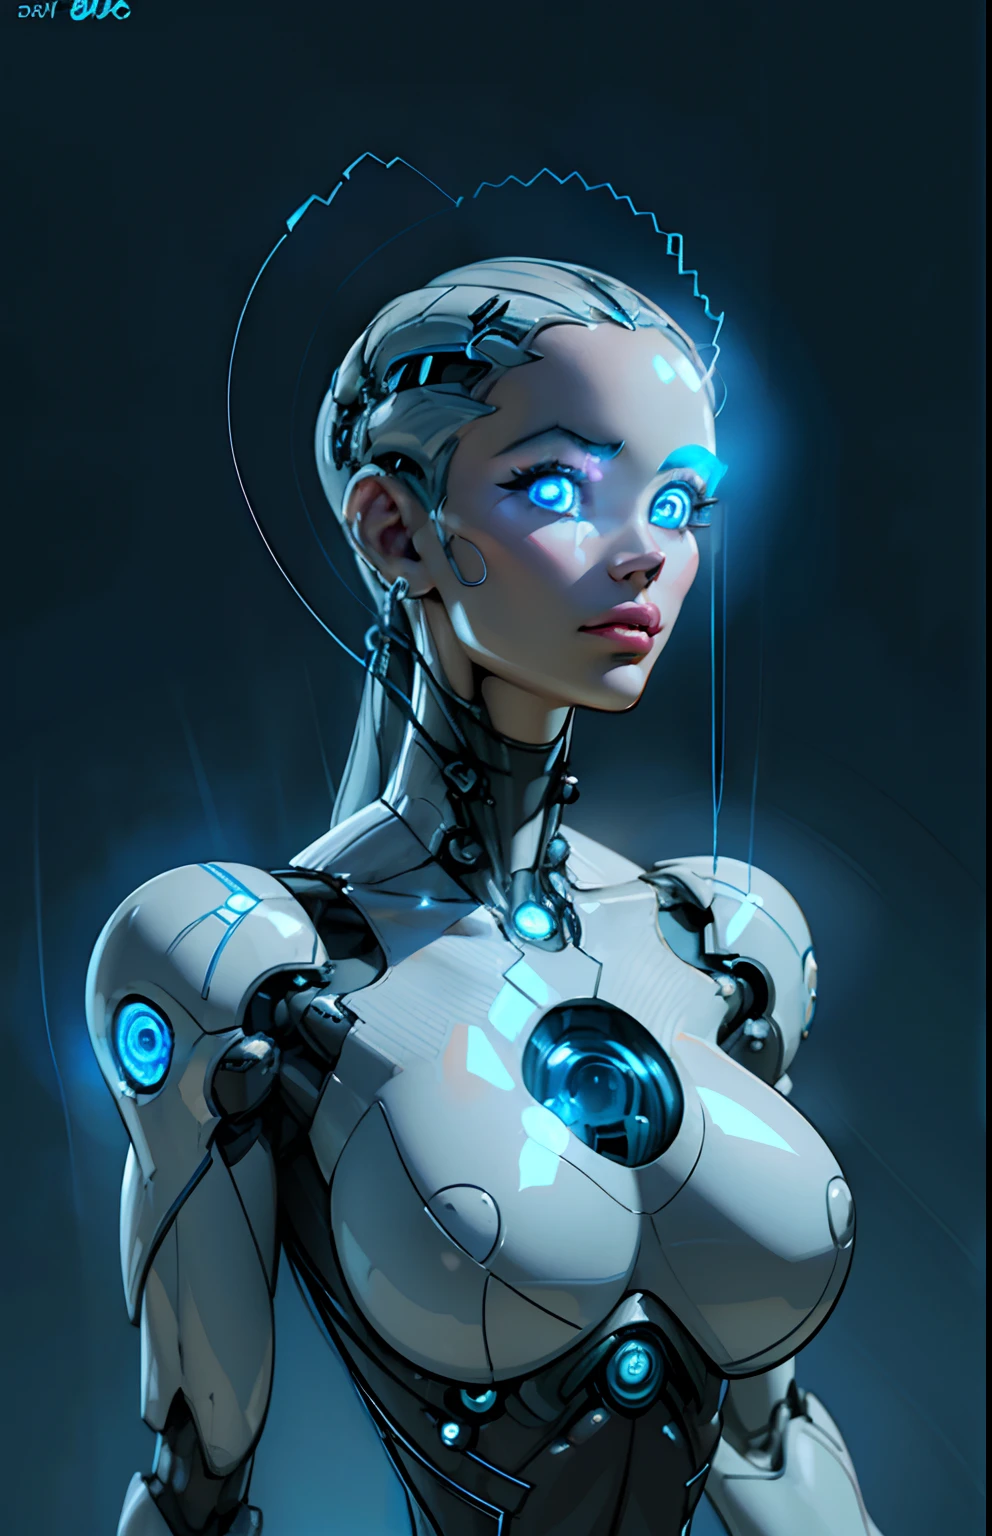 复杂 3D 渲染超详细的美丽瓷器侧面女人机器人脸, 机器人, 机器人ic parts, 150 毫米, 美丽的工作室柔和的灯光, 边缘光, 生动的细节, 奢华赛博朋克, 蕾丝, ((闪亮的蓝眼睛:1.5)), hyper实际的, 解剖的, 面部肌肉, 电缆电线, 微芯片, 优雅的, 美丽的背景, 辛烷值渲染, H. r. 吉格风格, 8千, 最好的质量, 杰作, 插图, 极其精致和美丽, 极其详细 ,CG ,统一 ,墙纸, (实际的, photo-实际的:1.37),惊人的, 精细细节, 杰作,最好的质量,官方艺术, 极其详细 CG 统一 8千 墙纸, 荒诞, incredibly 荒诞,  机器人, 银珠, 全身